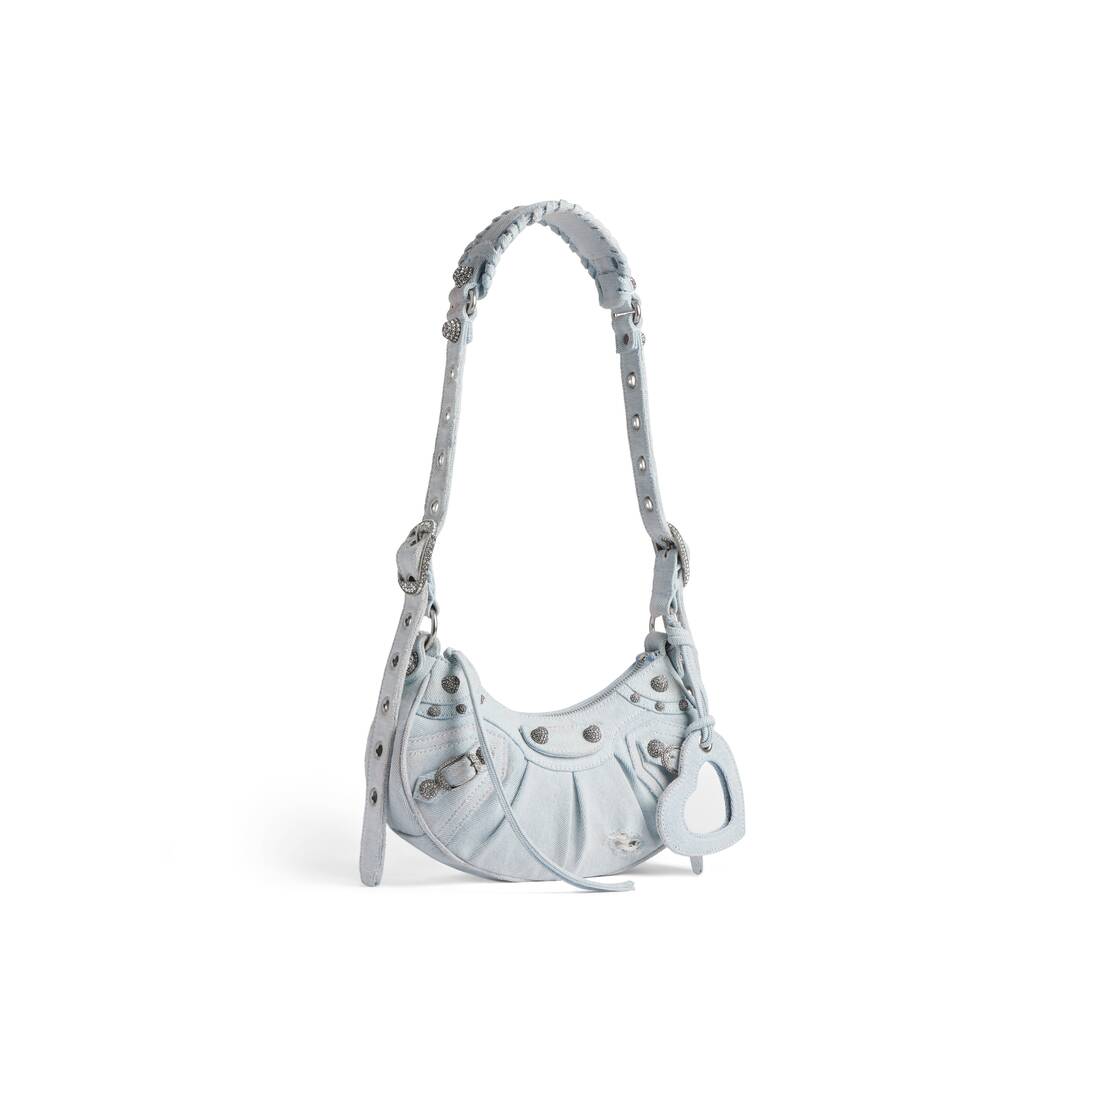 Balenciaga Le Cagole Xs Bucket Bag Denim with Rhinestones - Blue - Women's - Denim